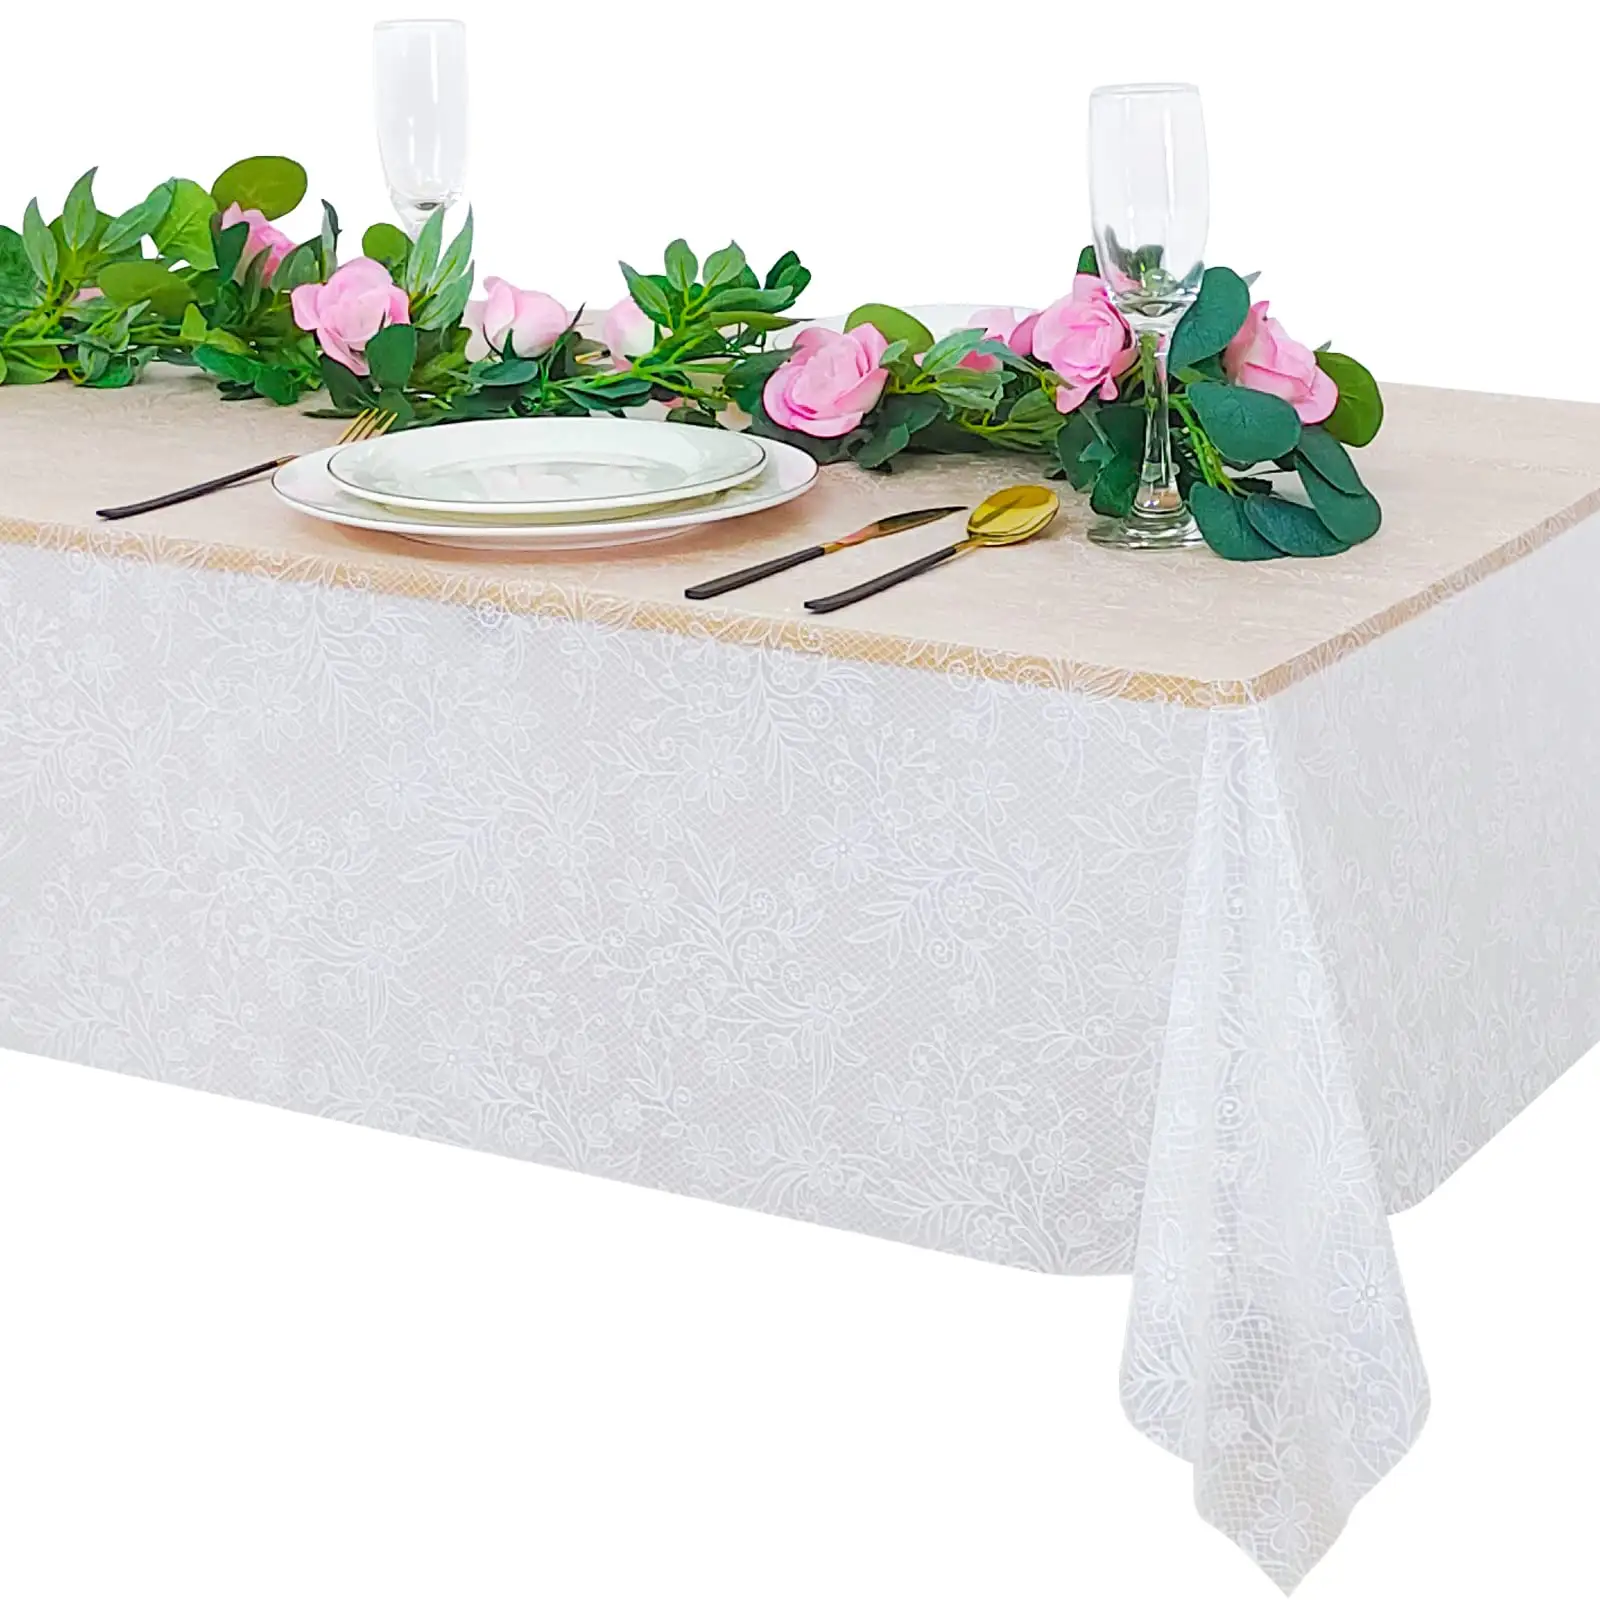 ผ้าคลุมโต๊ะกันน้ำ PEVA ผ้าปูโต๊ะลูกไม้พลาสติกสี่เหลี่ยมสำหรับงานแต่งงานงานเลี้ยงเจ้าสาว